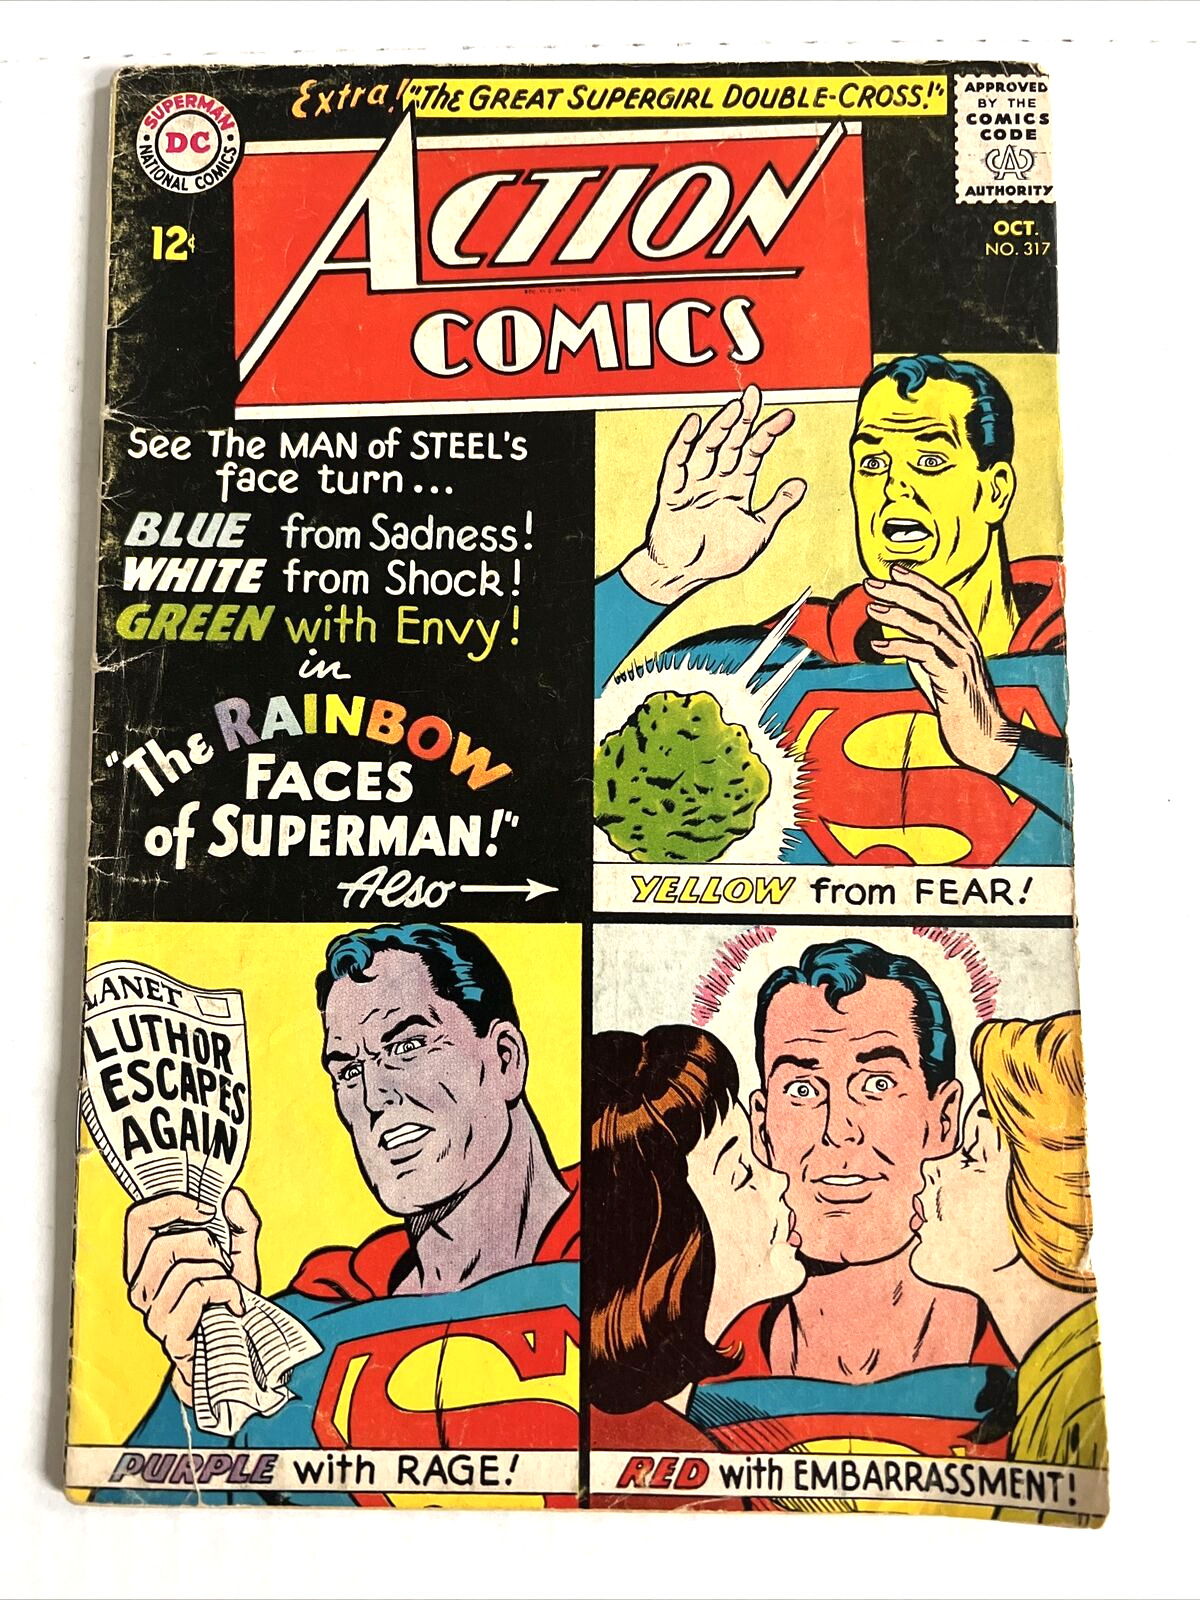 Vintage 1964 DC Comics Superman Action Comics #317